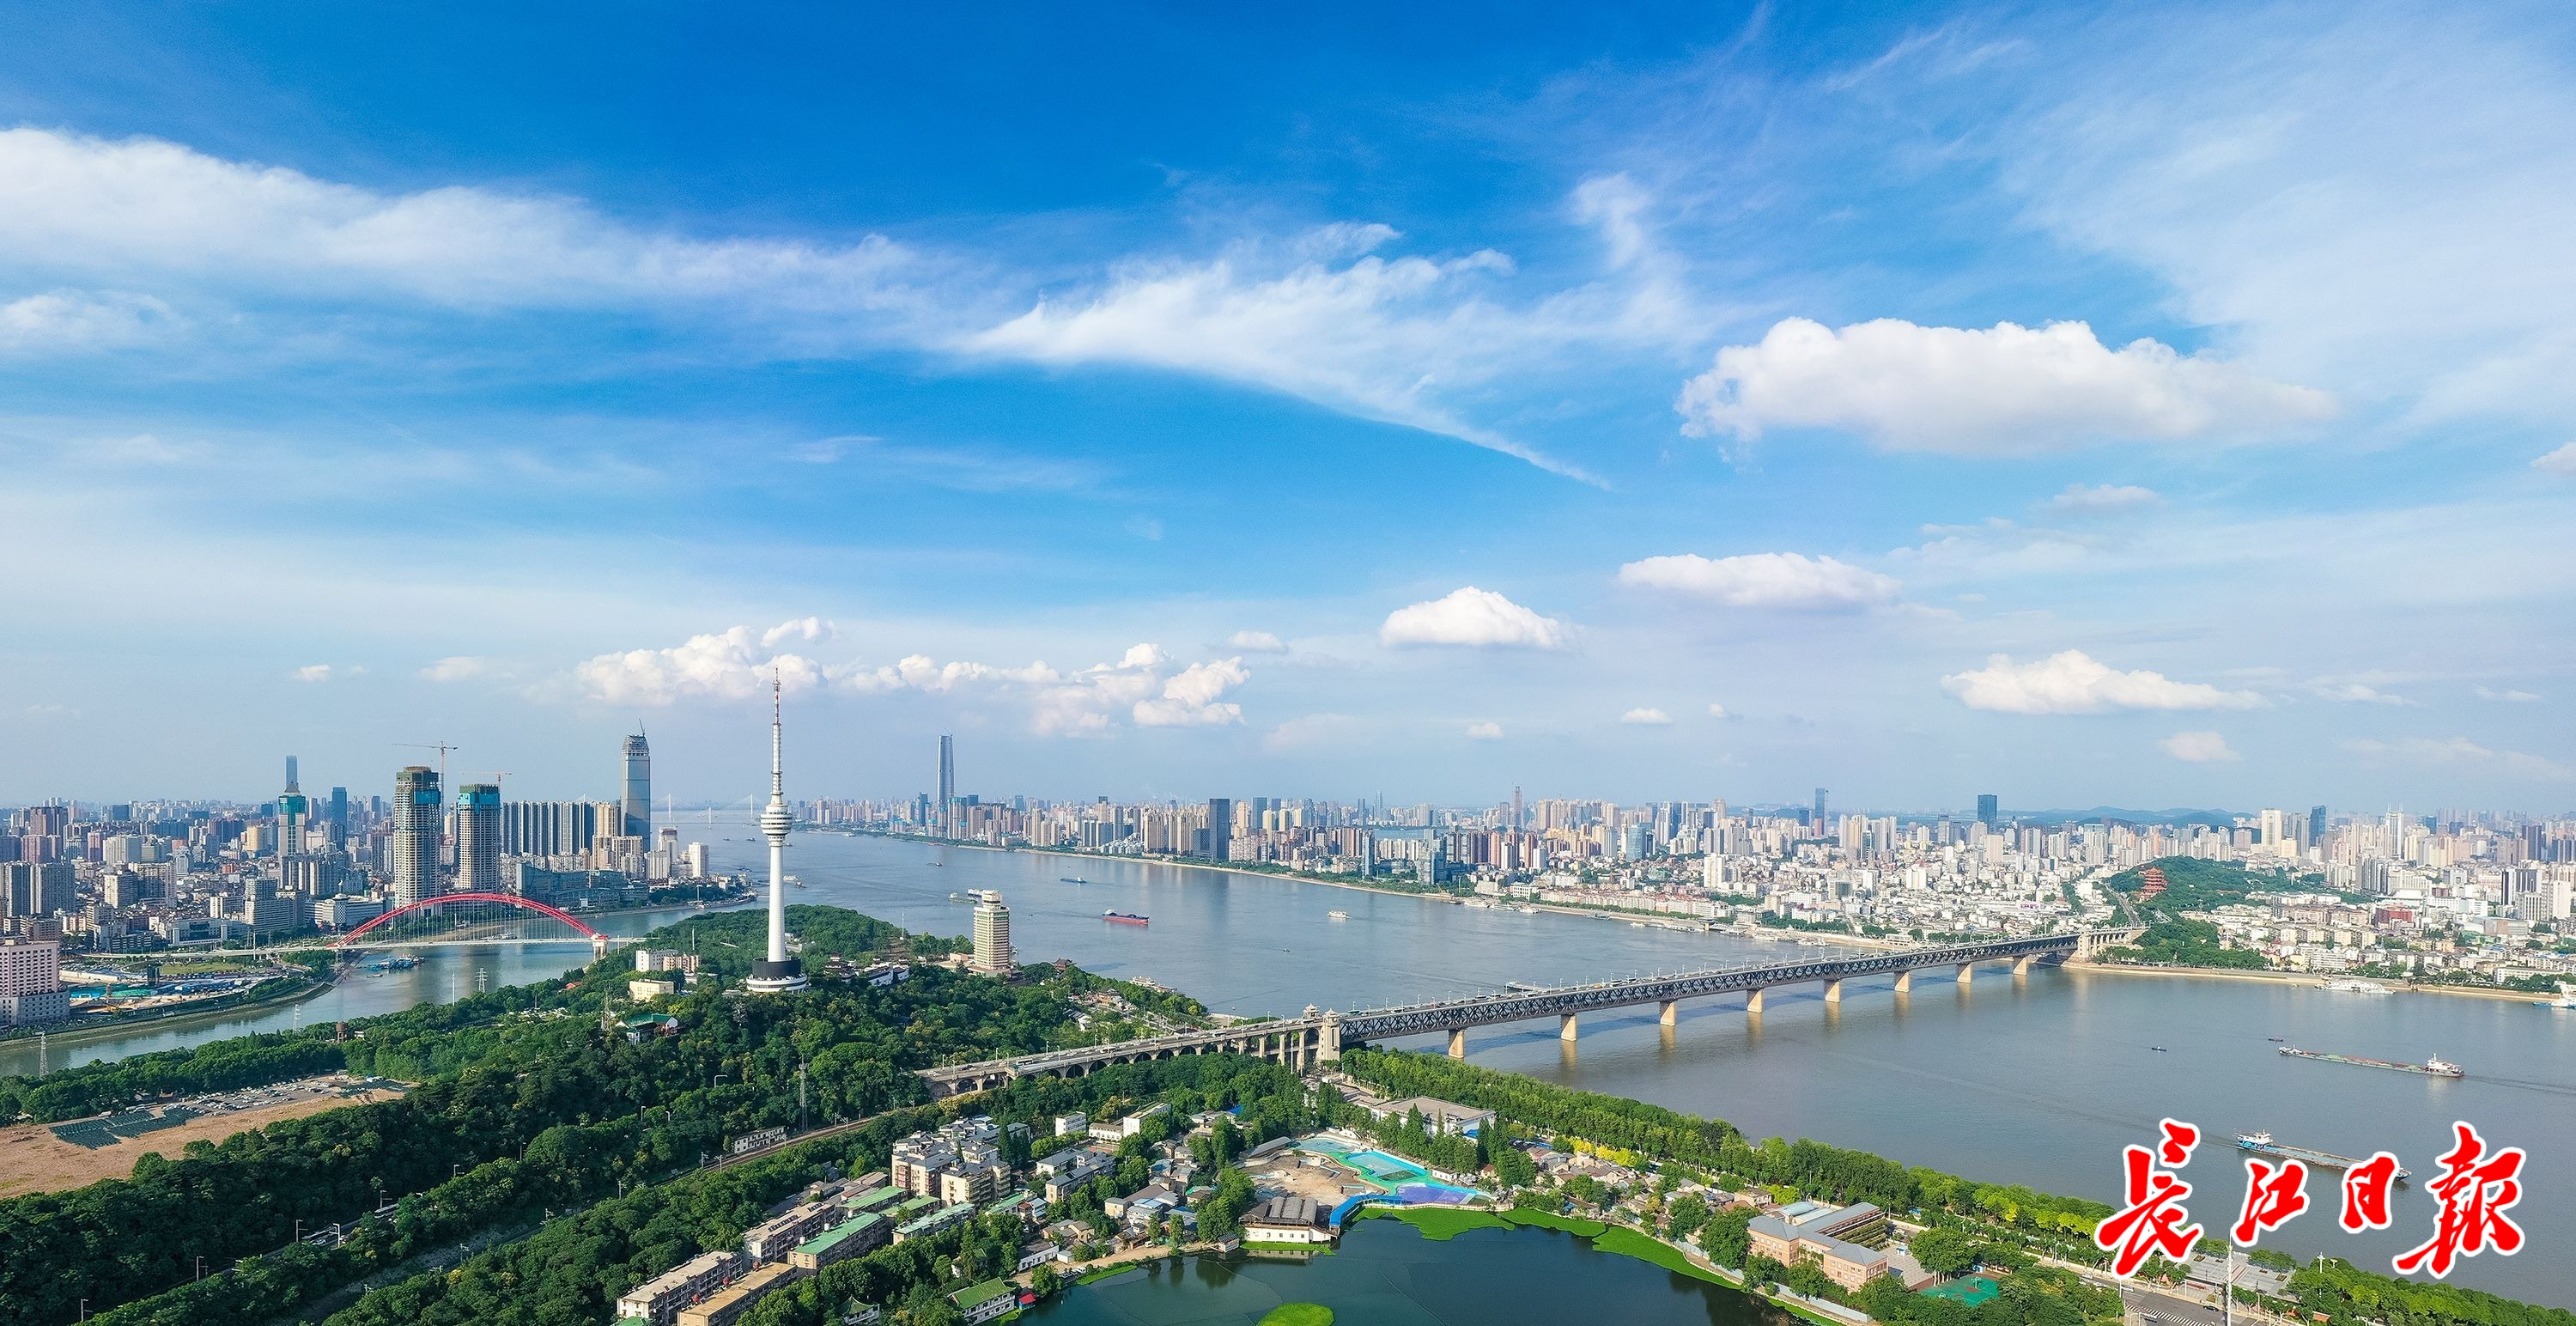 武汉要抢占创新能级这个城市能级制高点丨长江评论